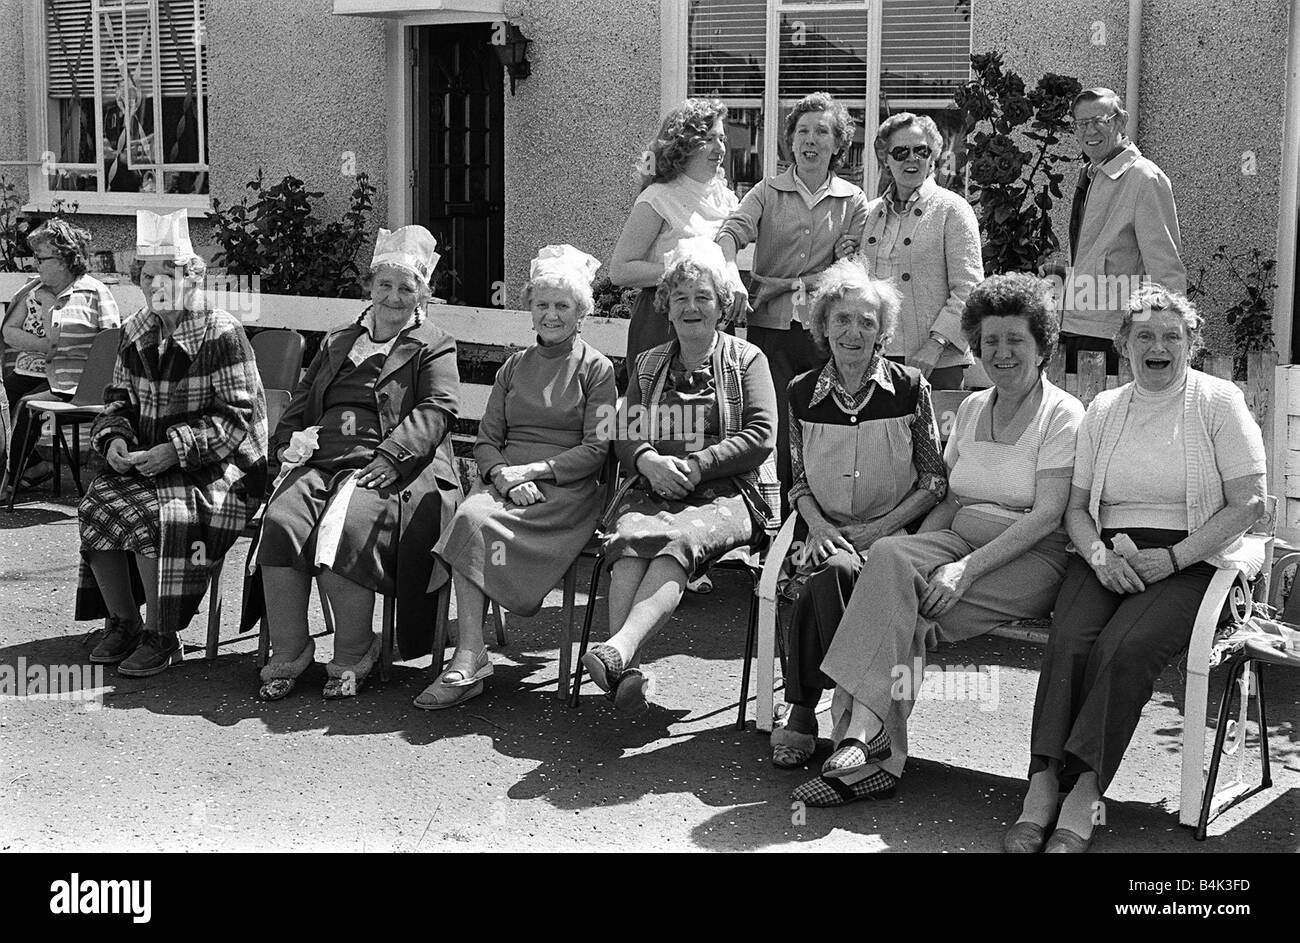 Königliche Hochzeit feiern In Ulster Juli 1981 Rentner die Sonne zu genießen, während Sie beobachten die Kinder s Party am Ufer Crescent Shore Road Belfast nach der Hochzeit wurde es Parteien in Hülle und Fülle auf den Straßen von Ulster Stockfoto